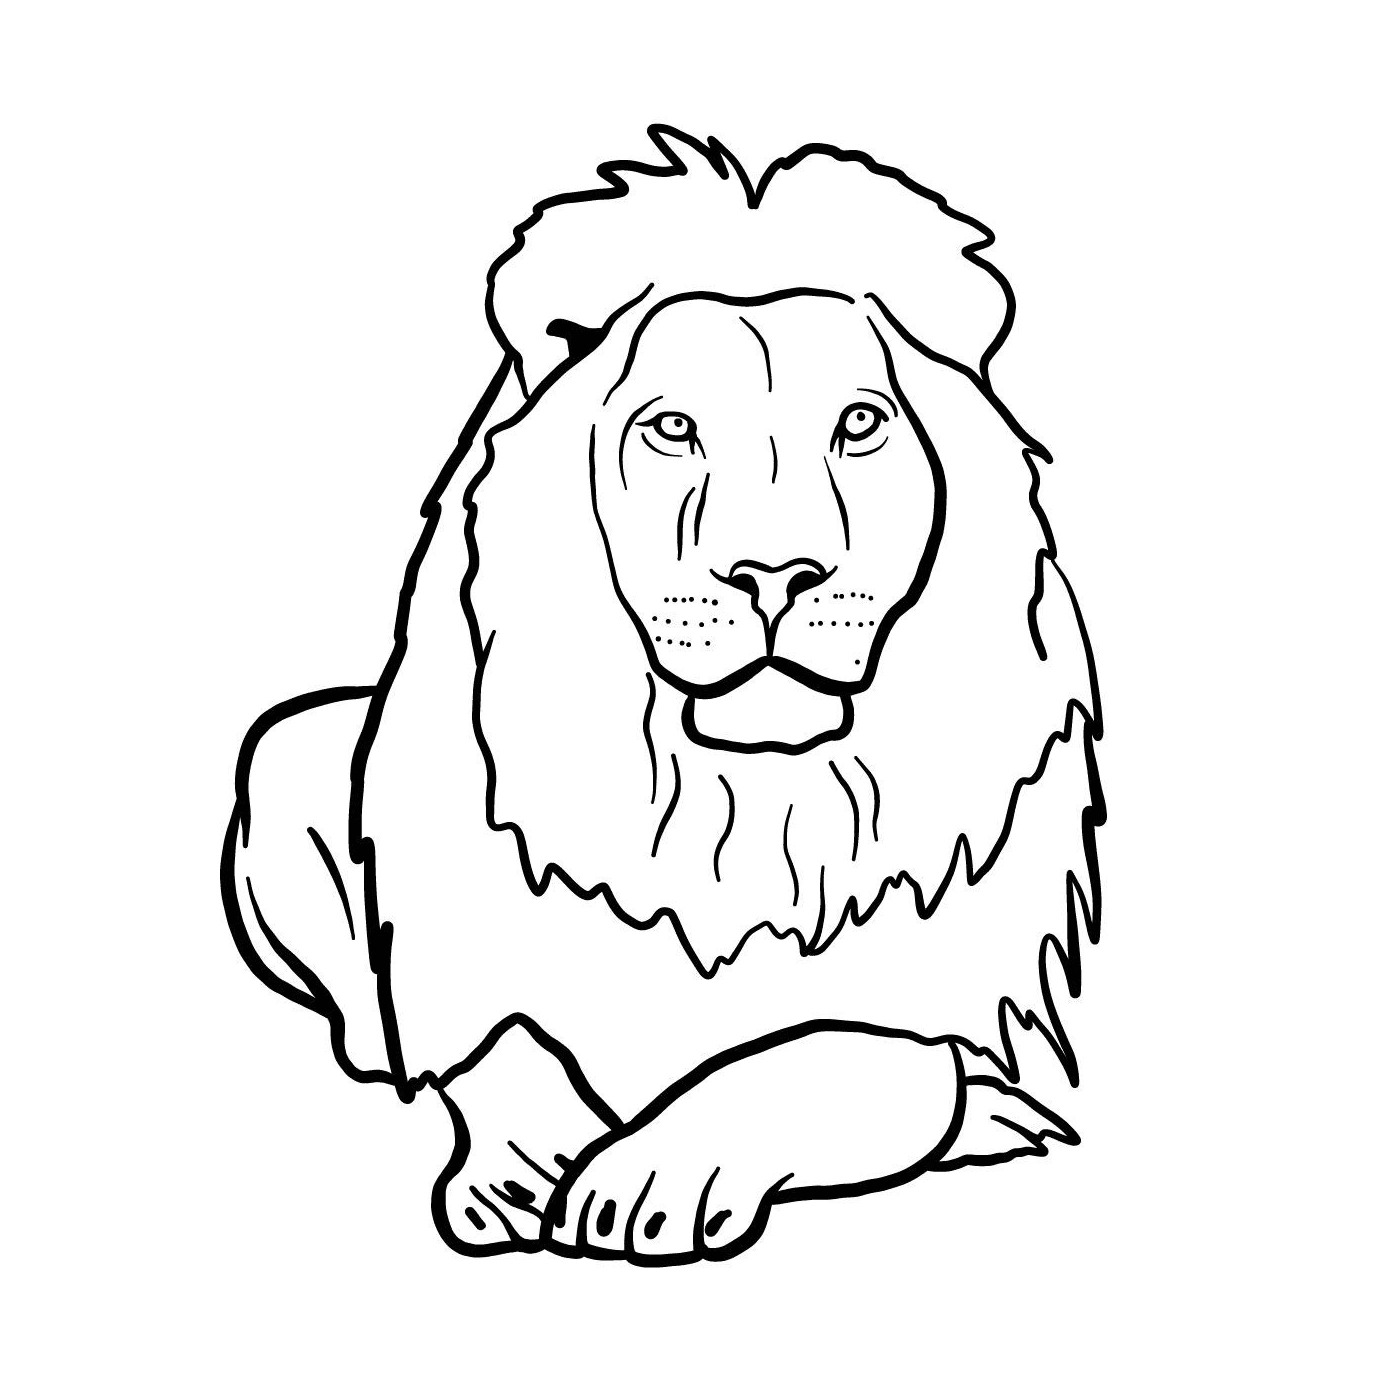  Una leona 